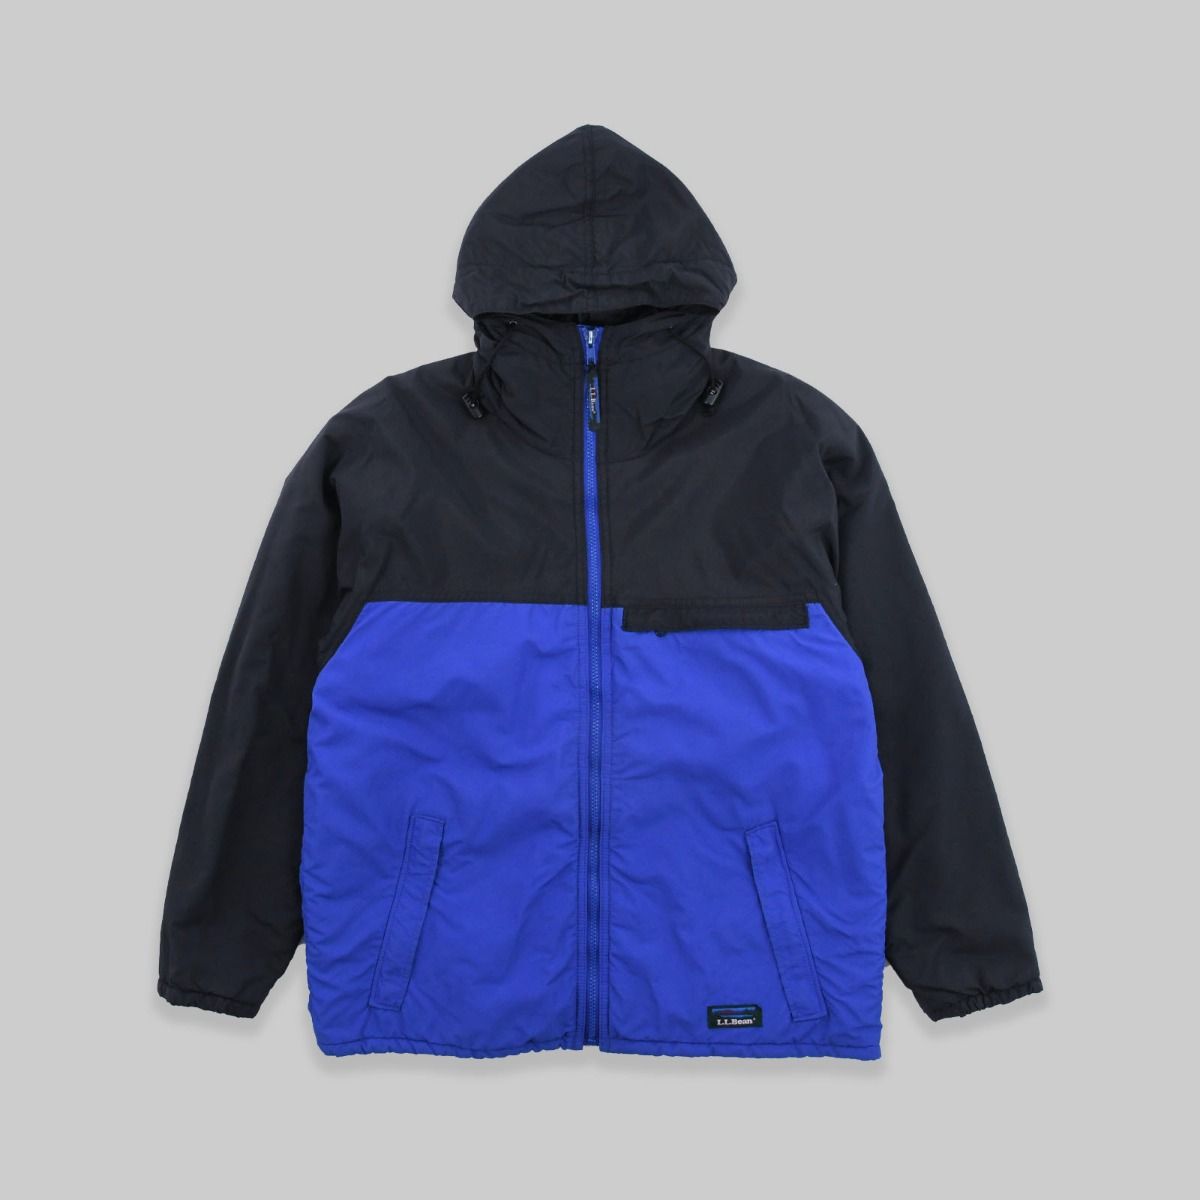 LL Bean 1990s Thinsulate Blue Jacket